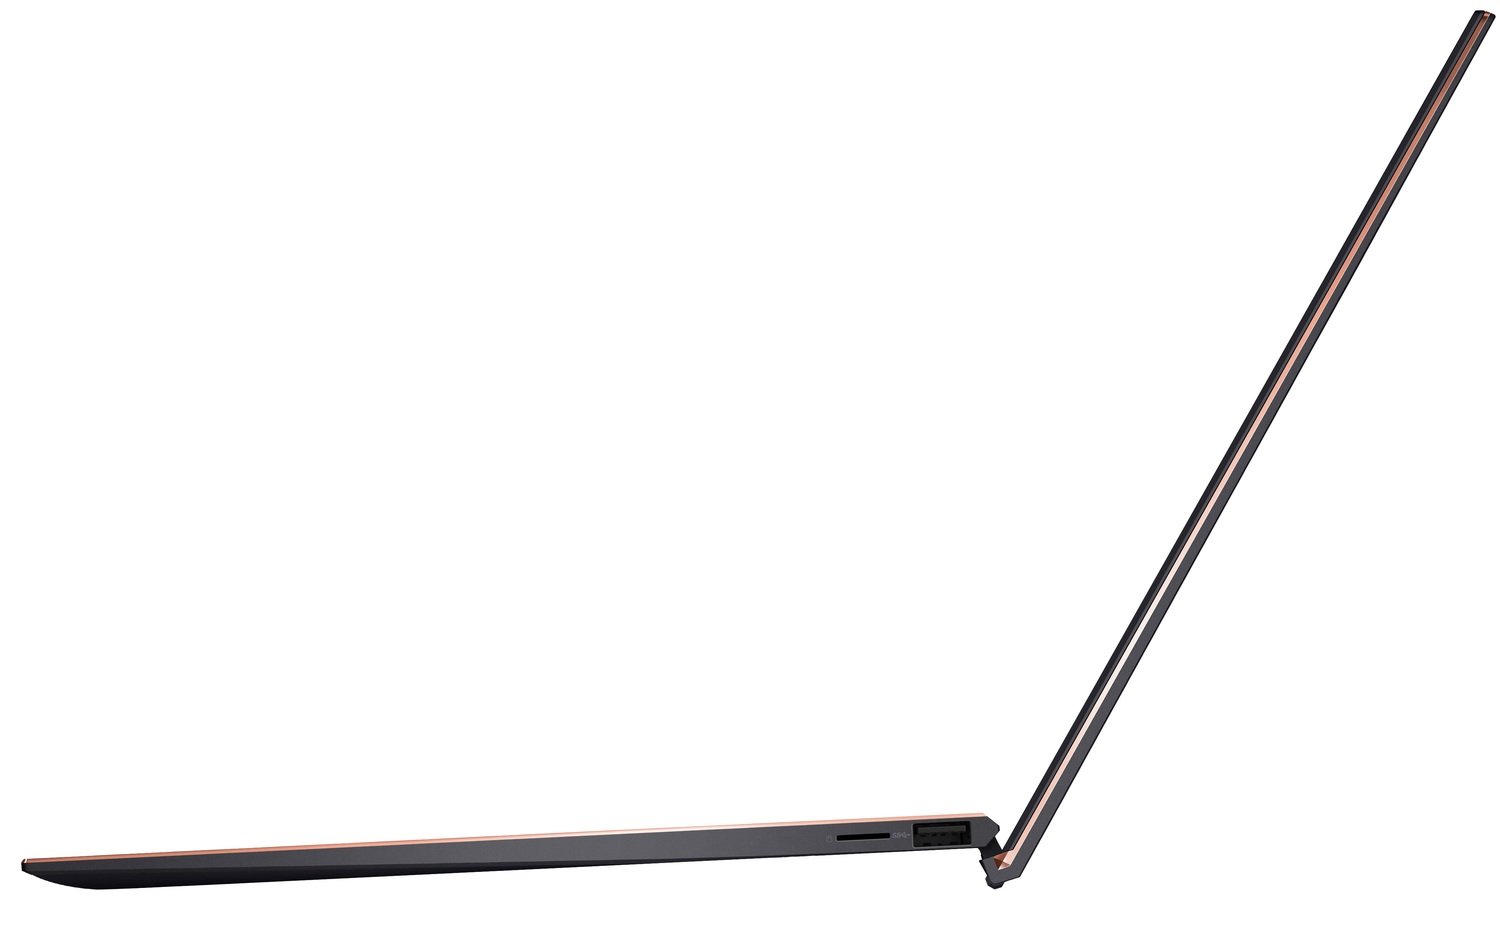 Ноутбук ASUS ZenBook S UX393EA-HK001T (90NB0S71-M00670)фото